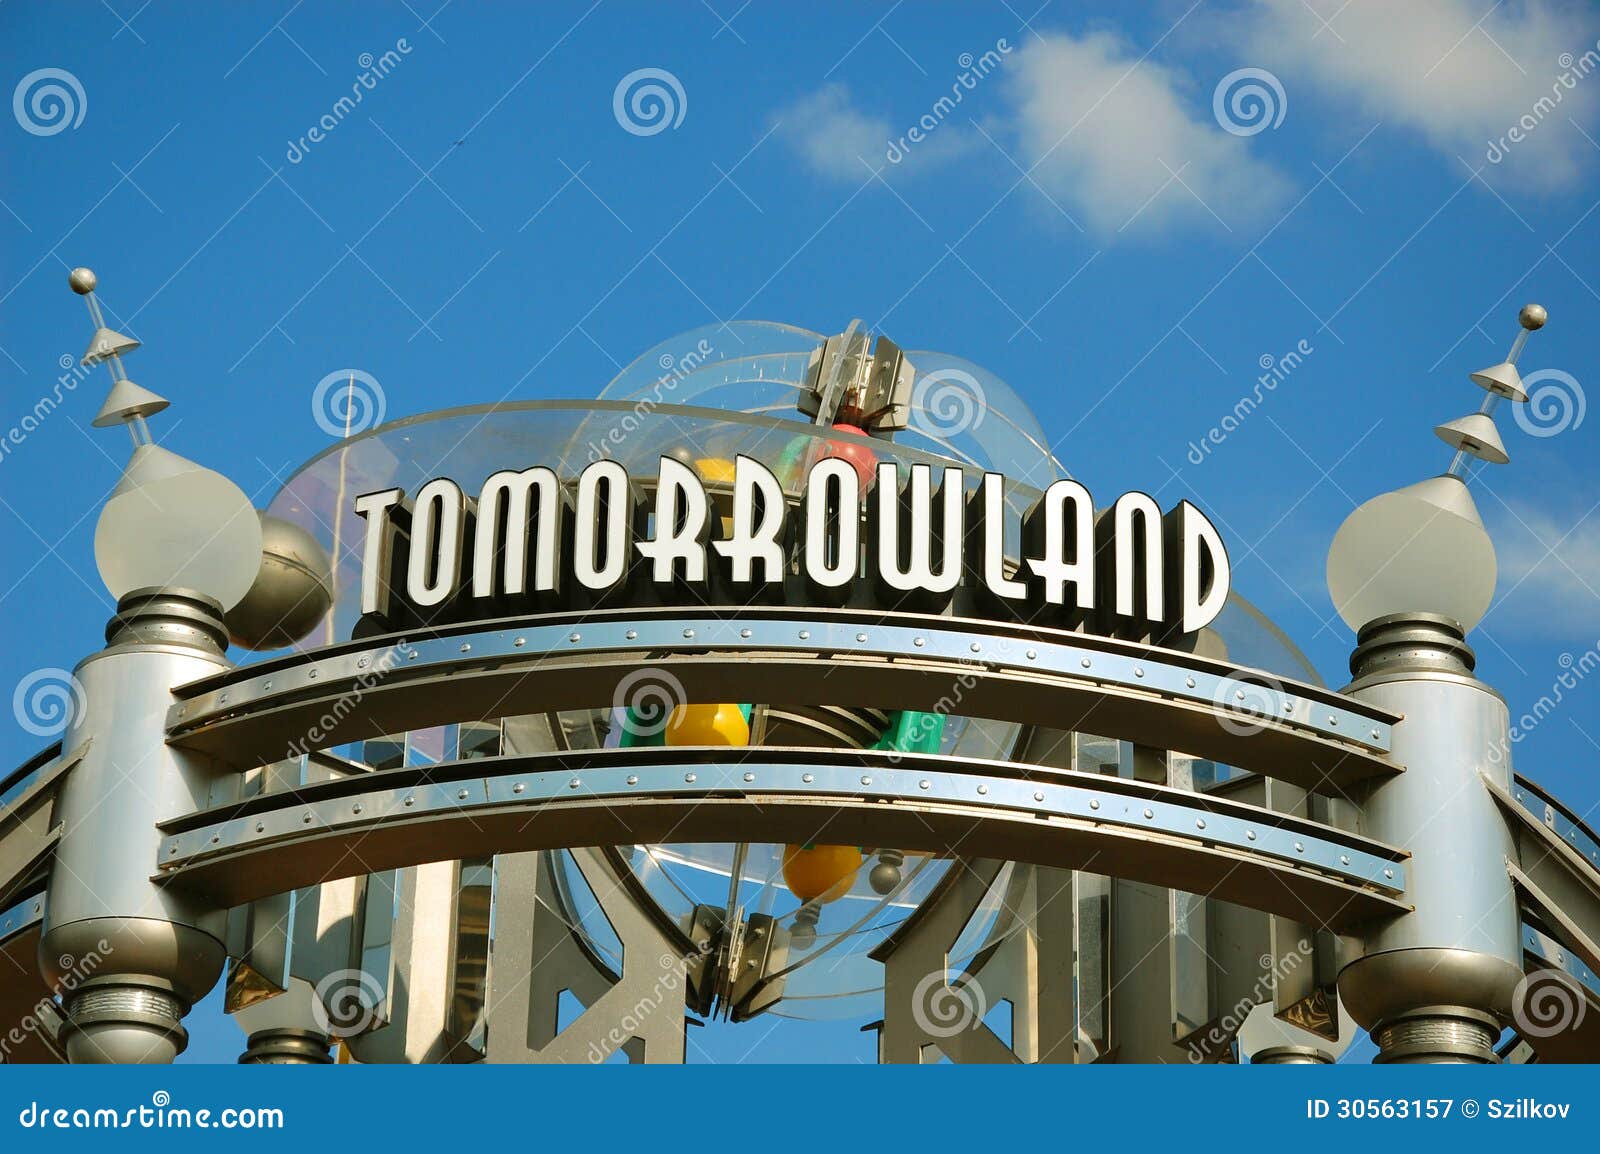 Entrée de Tomorrowland. Ravissez mener à Tomorrowland dans le royaume magique de Disney, Orlando, la Floride